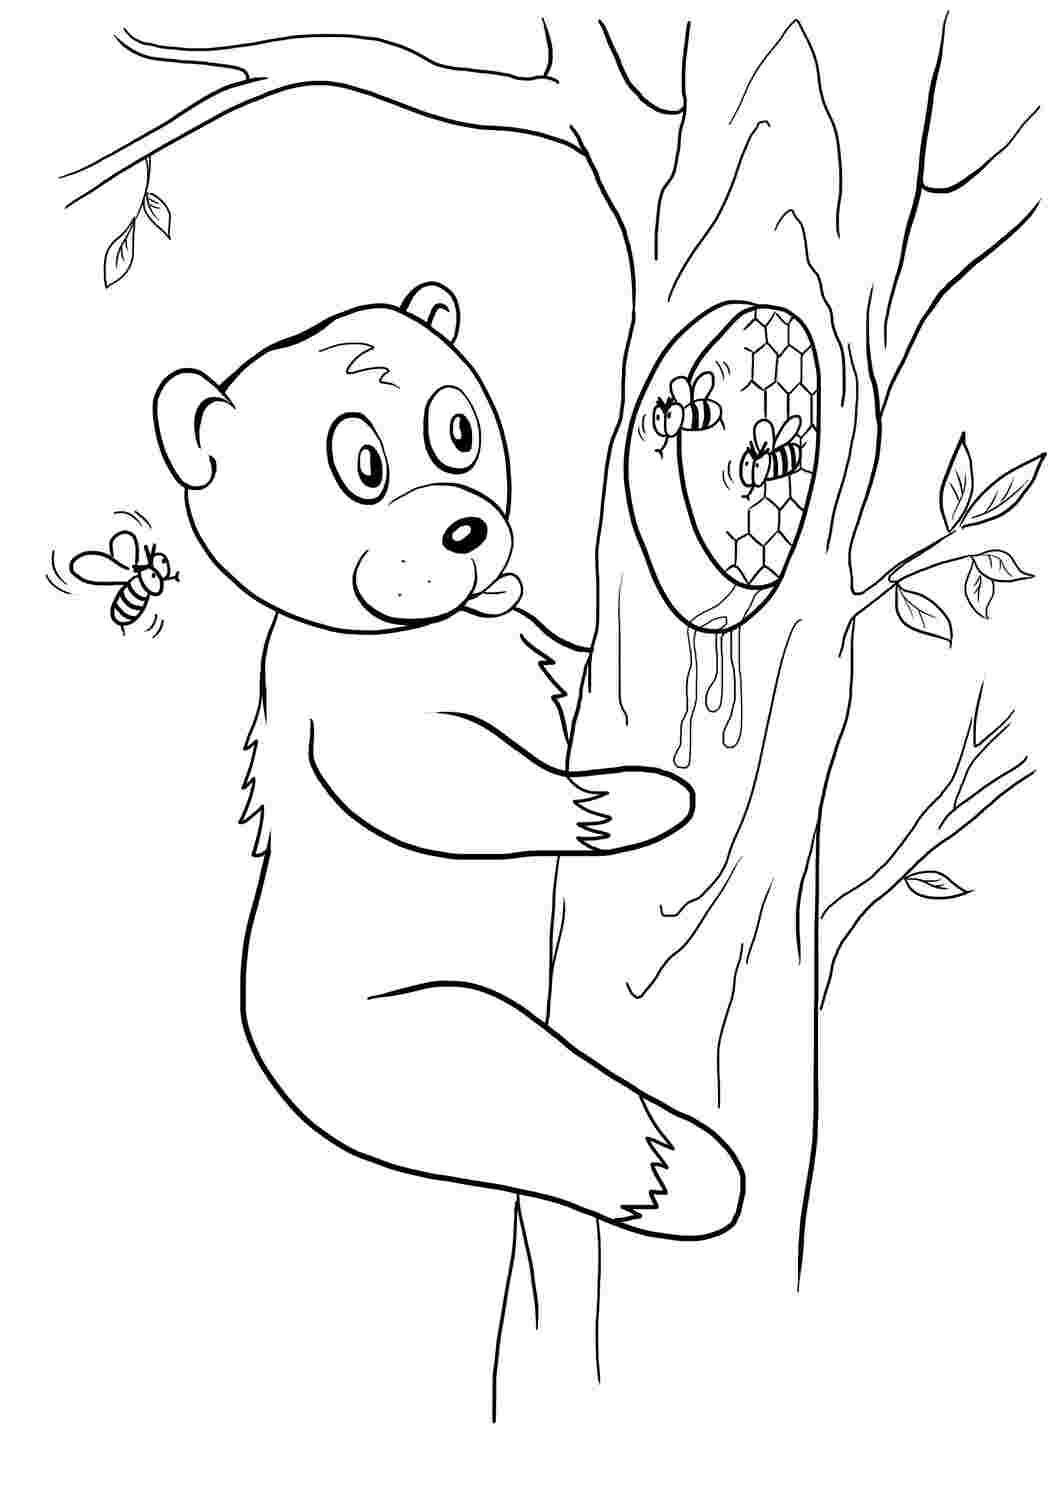 Раскраски картинки на рабочий стол онлайн Медведь лезет на дерево за медом, дерево, пчелы Раскраски для мальчиков